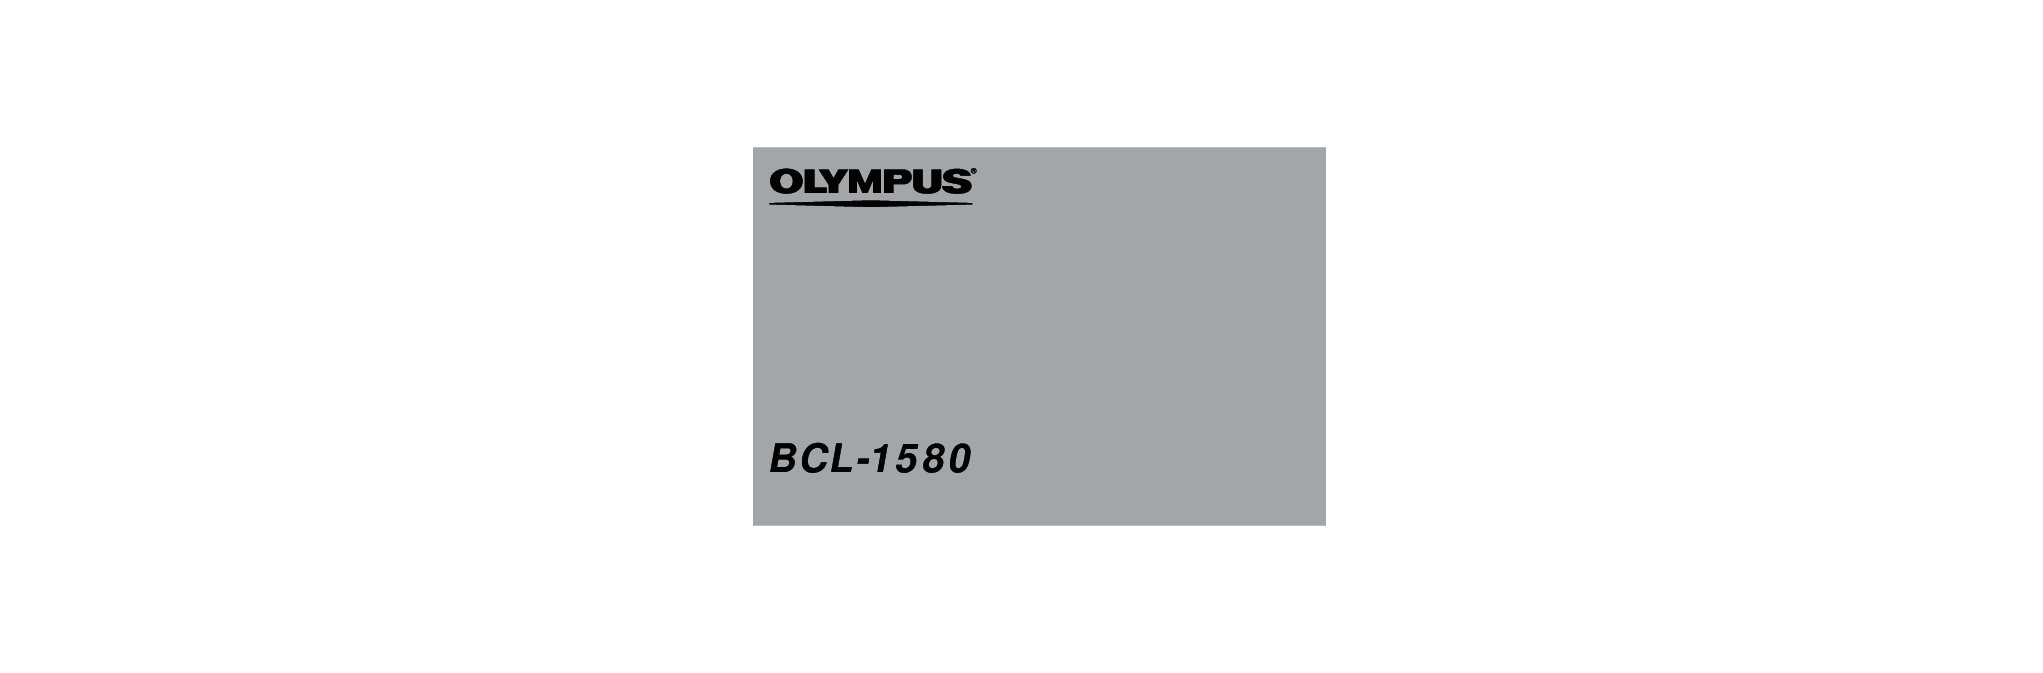 奥林巴斯 Olympus BCL 1580 使用说明书 封面